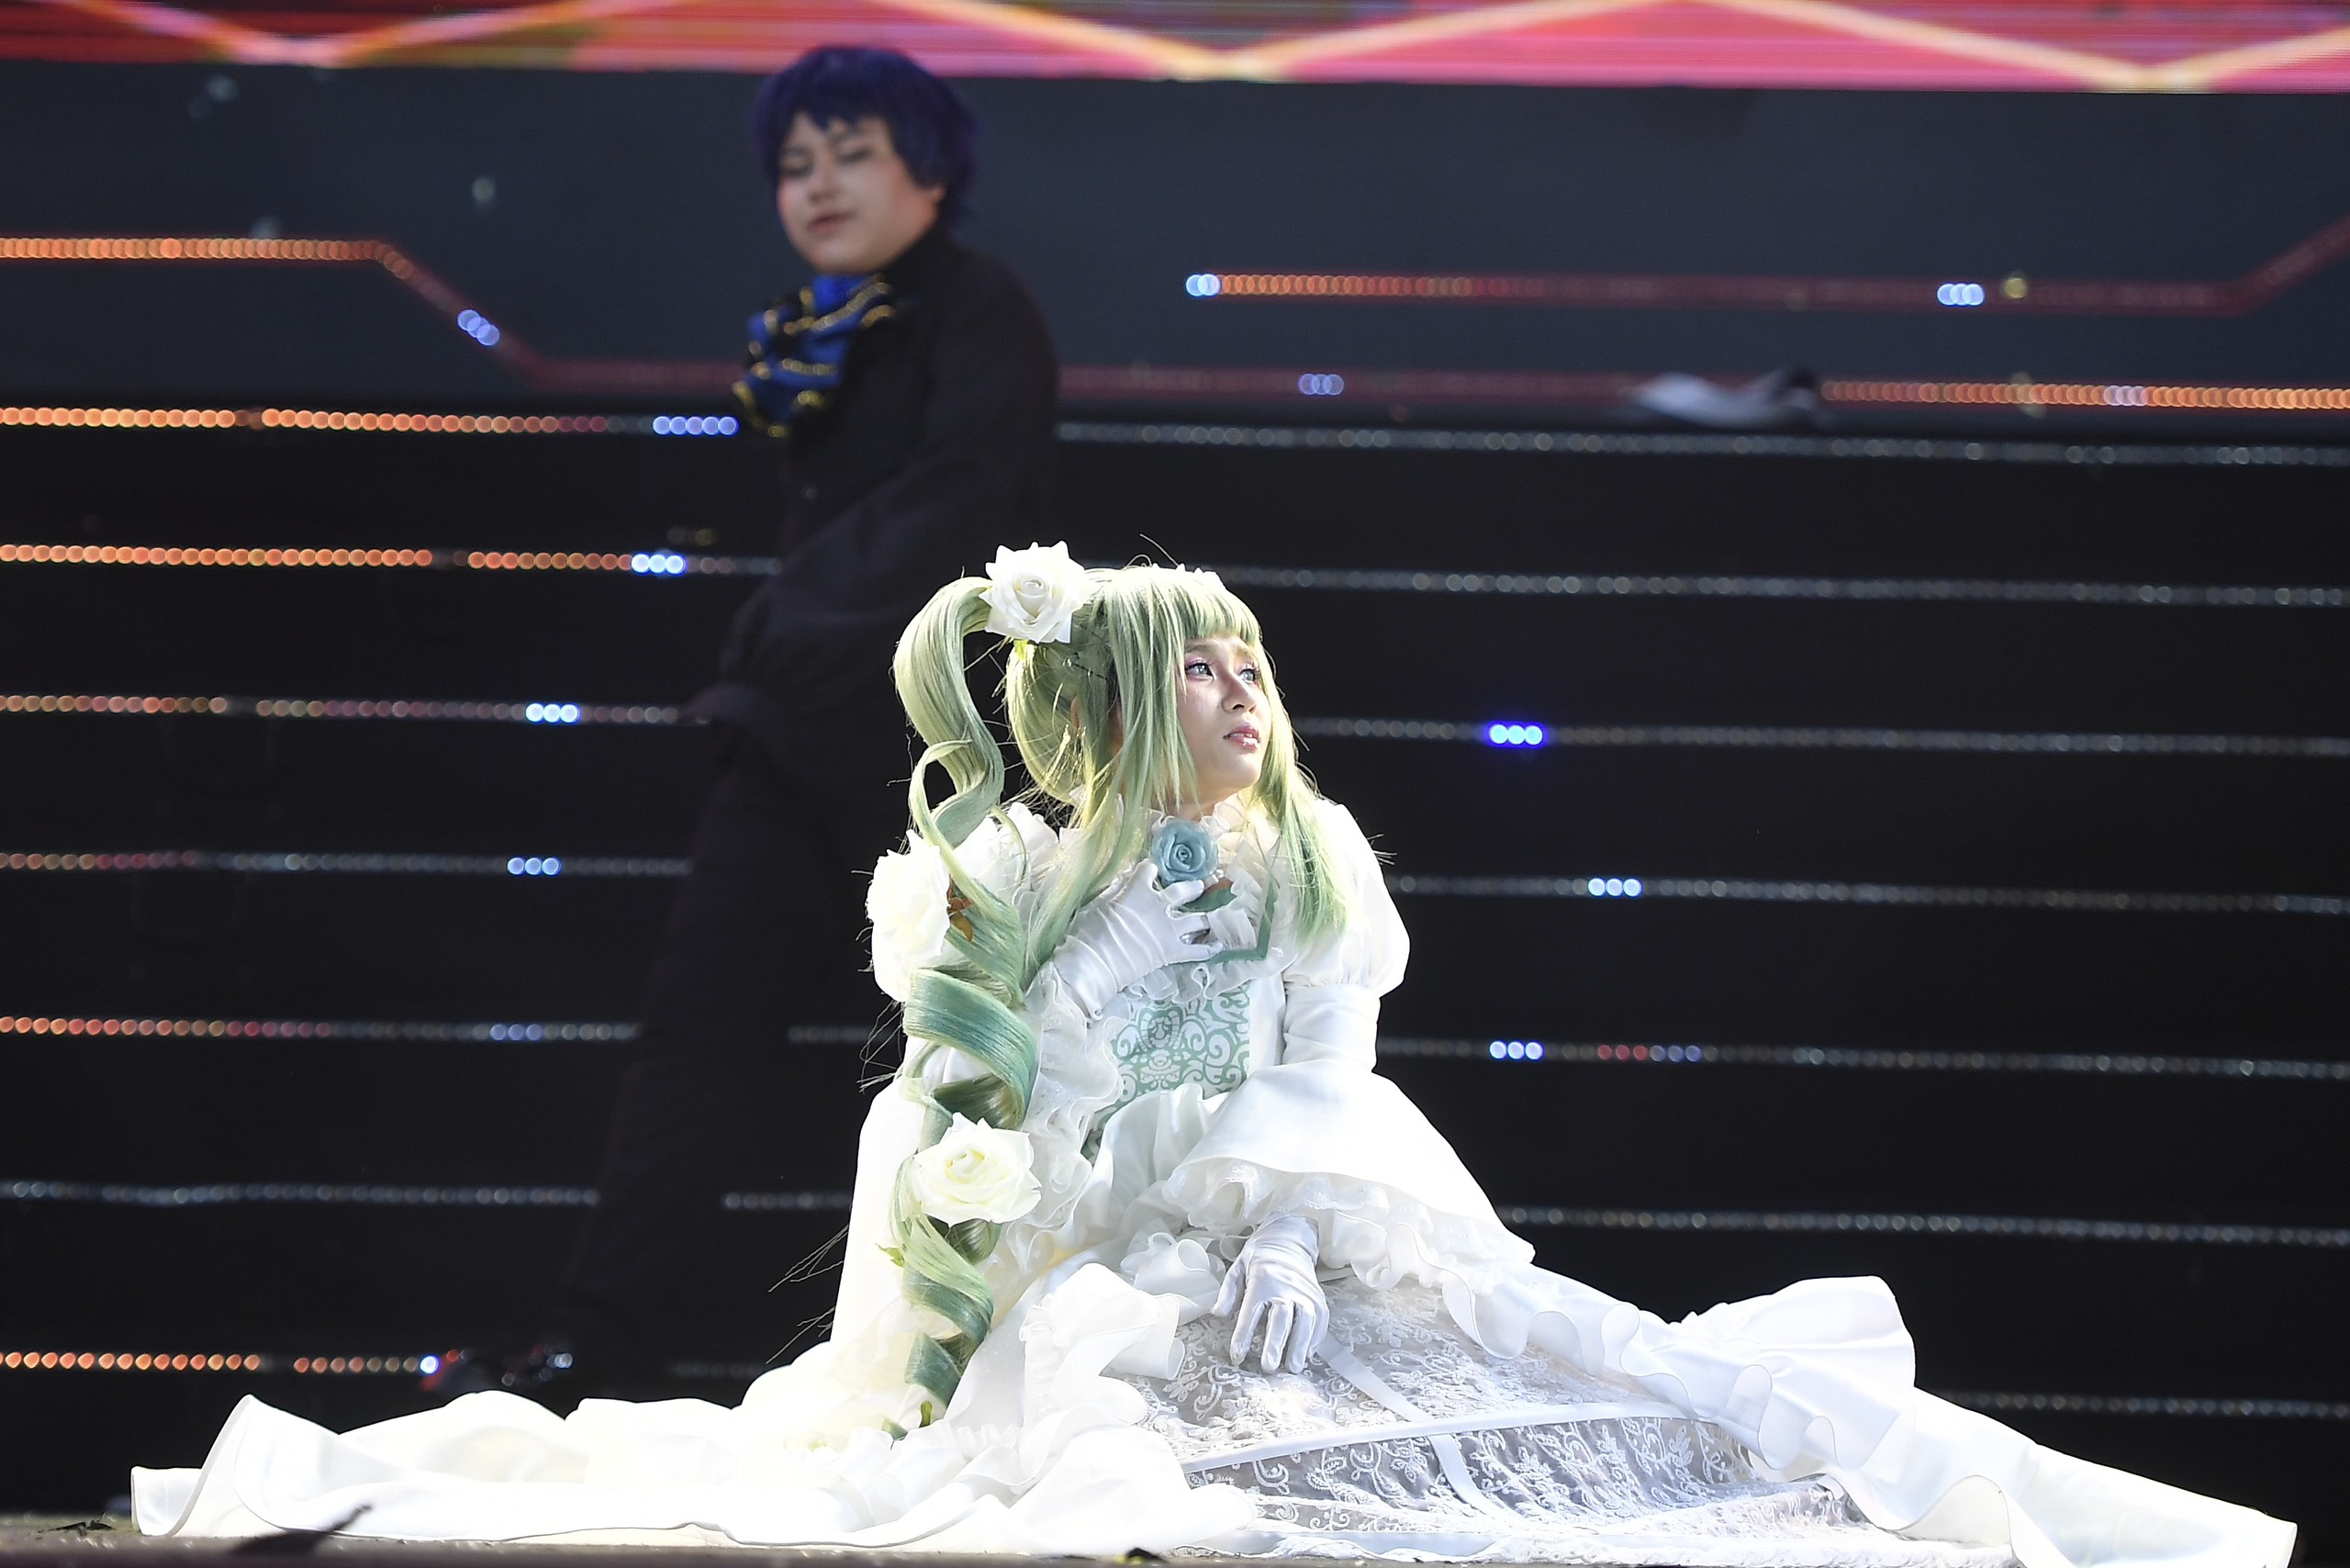 Thí sinh PoPo Nyan đồng diễn trên sân khấu với nhân vật Hatsune Miku - trò chơi Project DIVA.